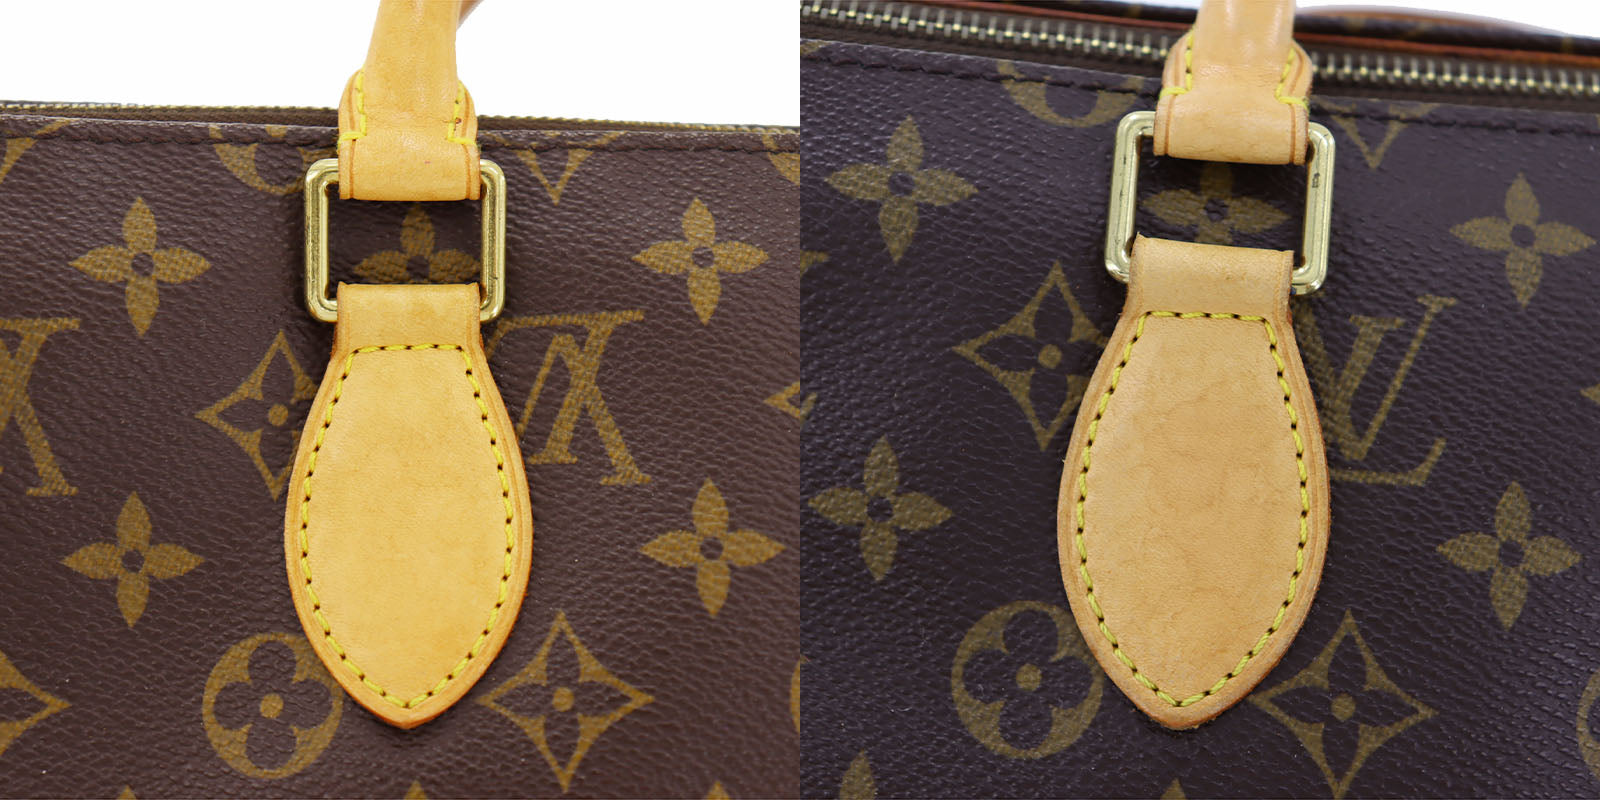 Louis Vuitton, Bags, Authentic Louis Vuitton Monogram Popincourt Shoulder Bag  Purse Tote